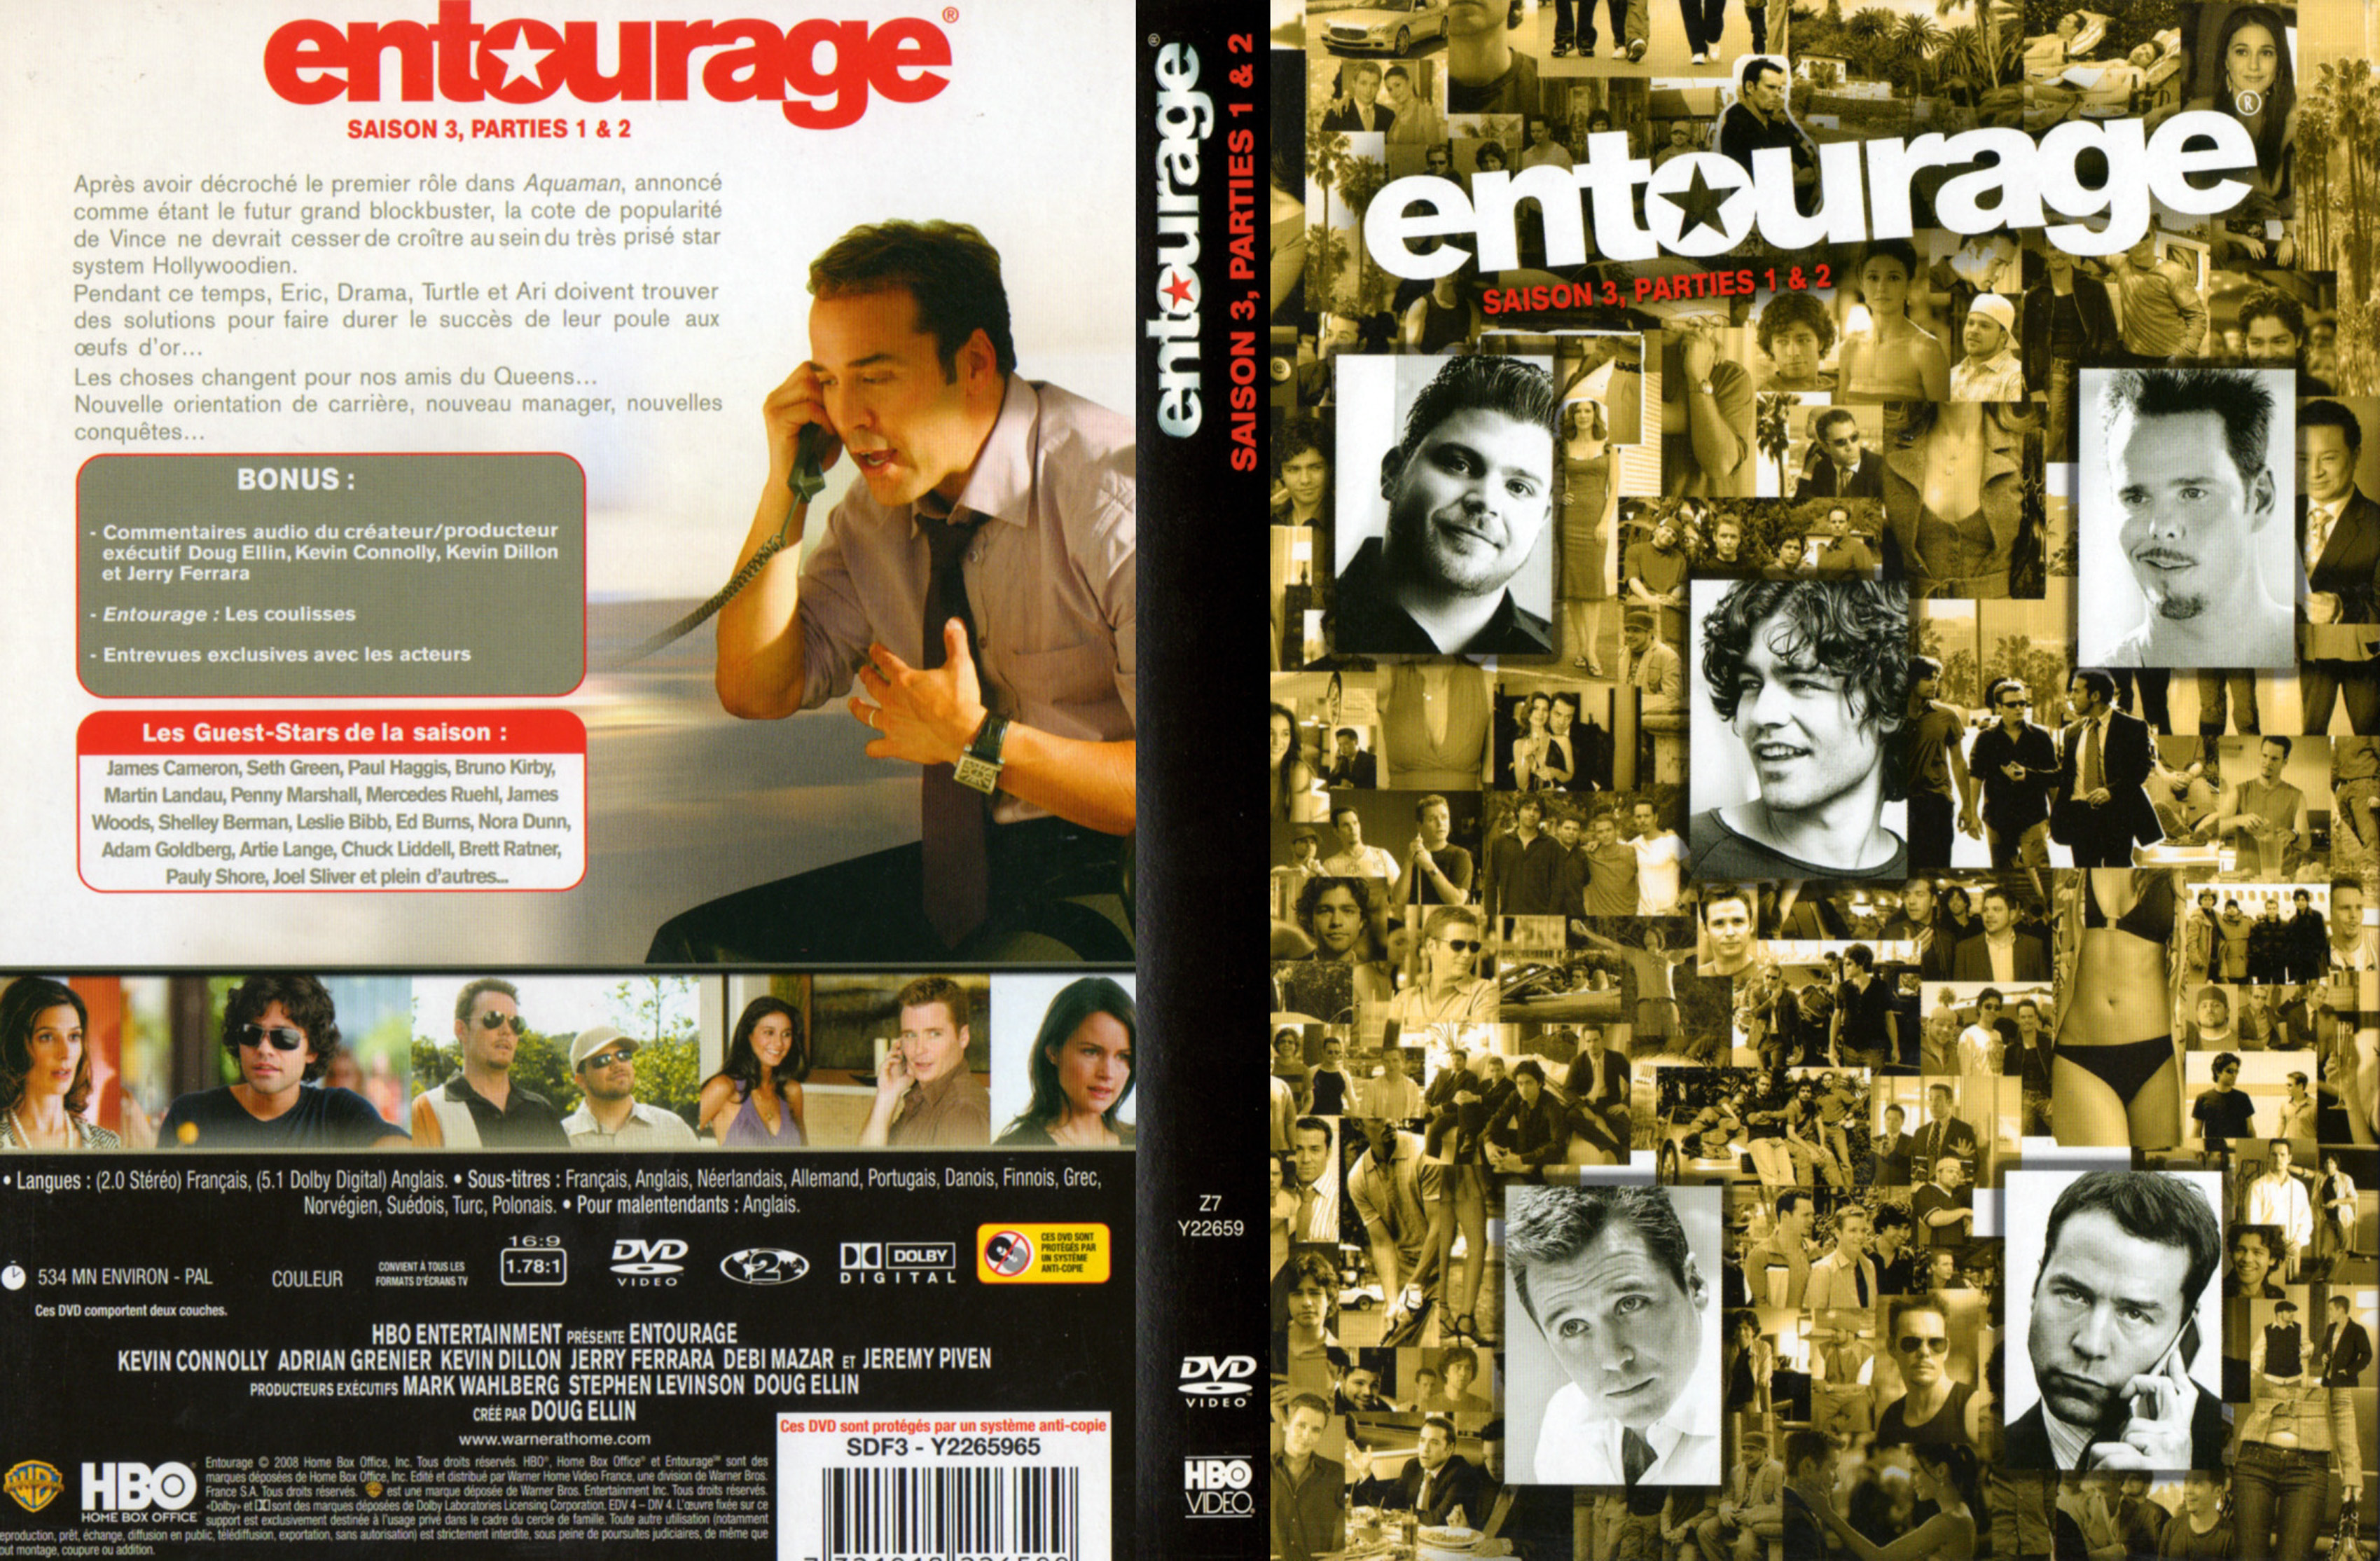 Jaquette DVD Entourage Saison 3